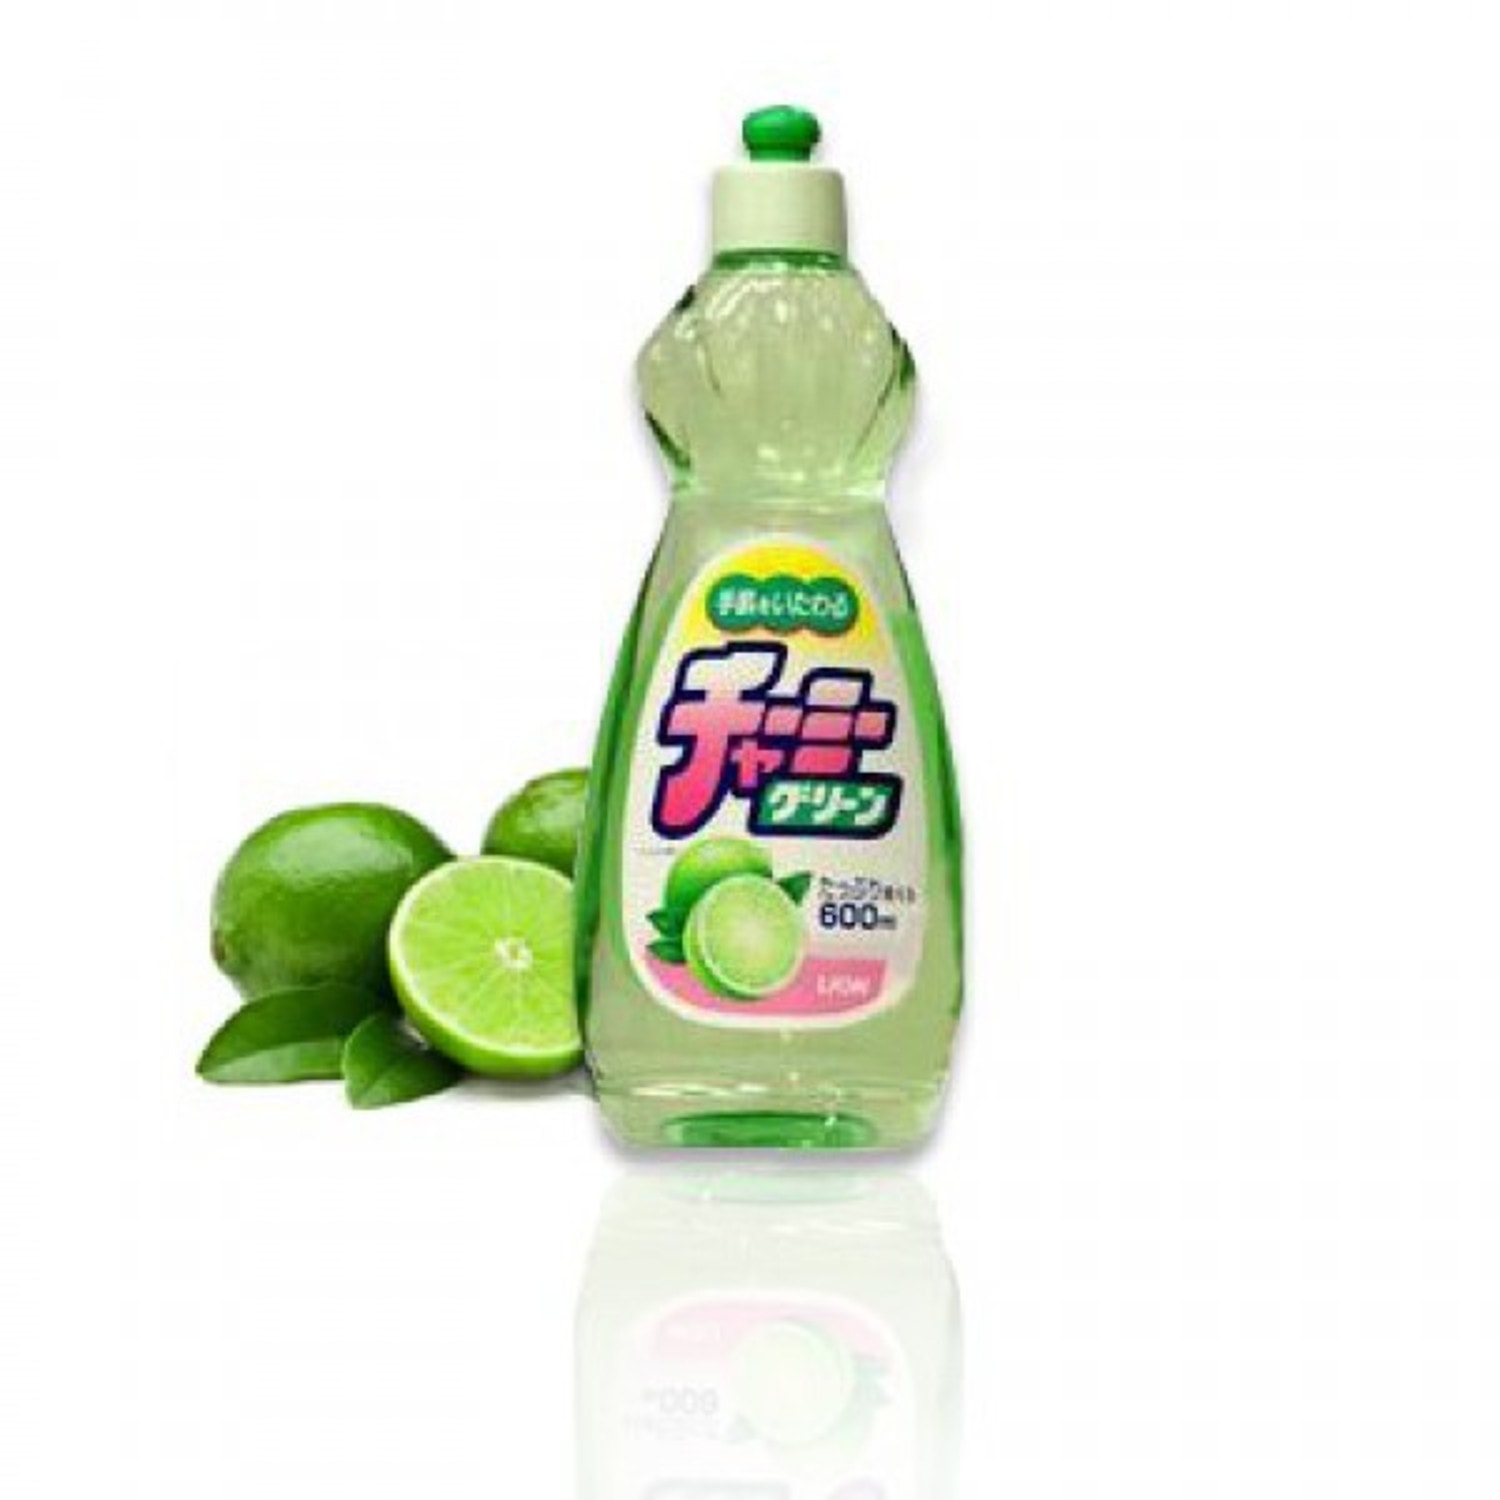 Lion Charmy Green Моющее средство для мытья посуды овощей и фруктов с ароматом лайма, 600мл. / 459026